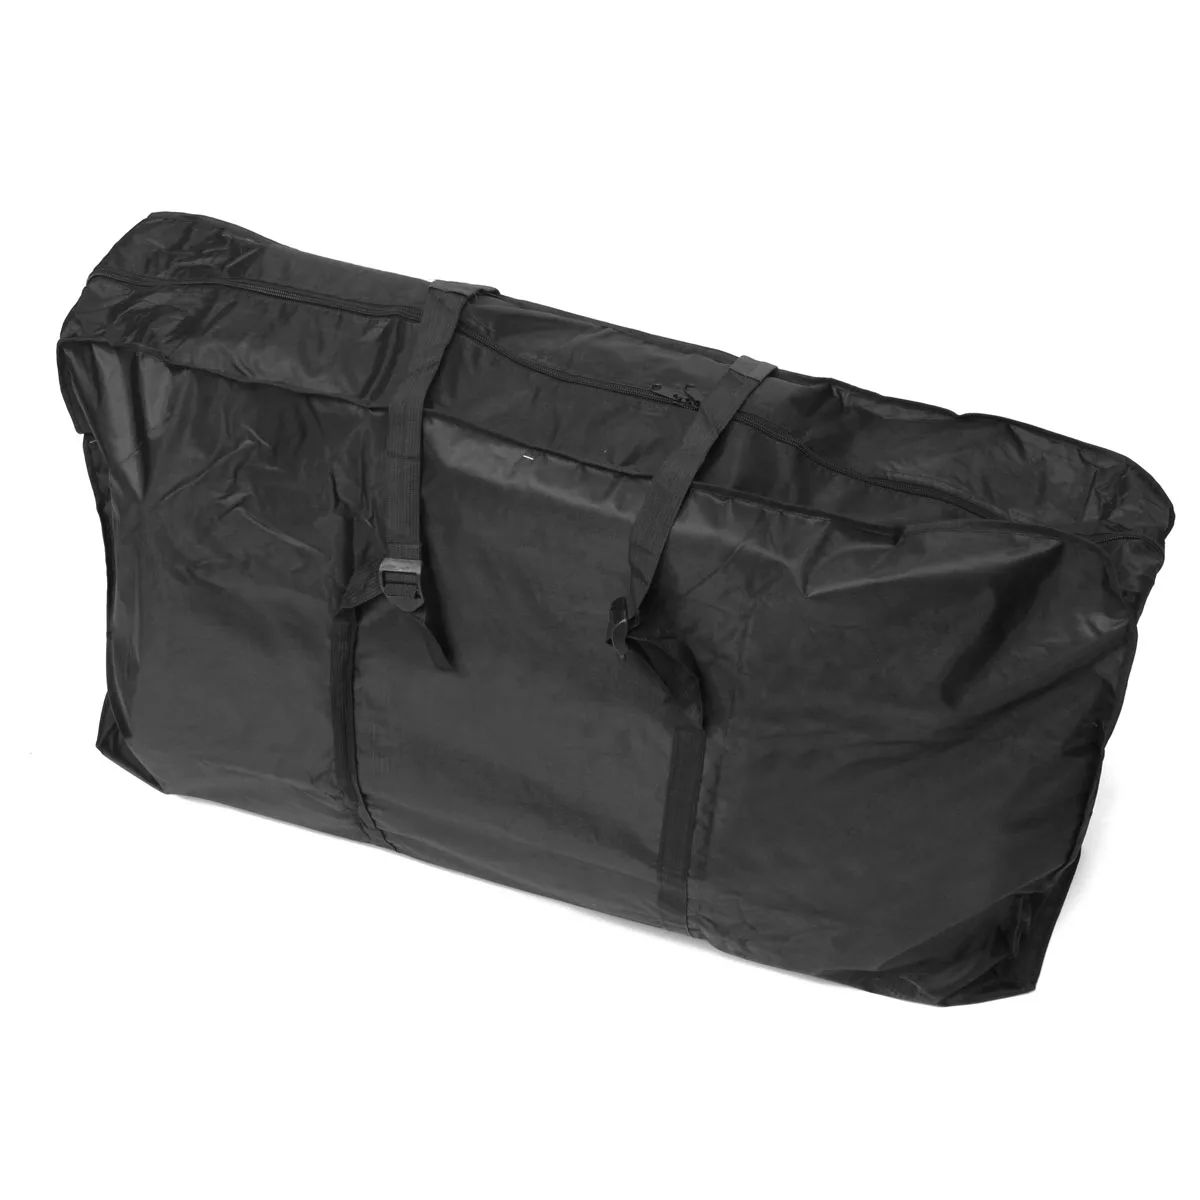 2" Сумка для переноски велосипеда, сумка для переноски велосипеда, посылка, сумка для хранения MTB велосипеда, сумка 130 см x 25 см x 82 см